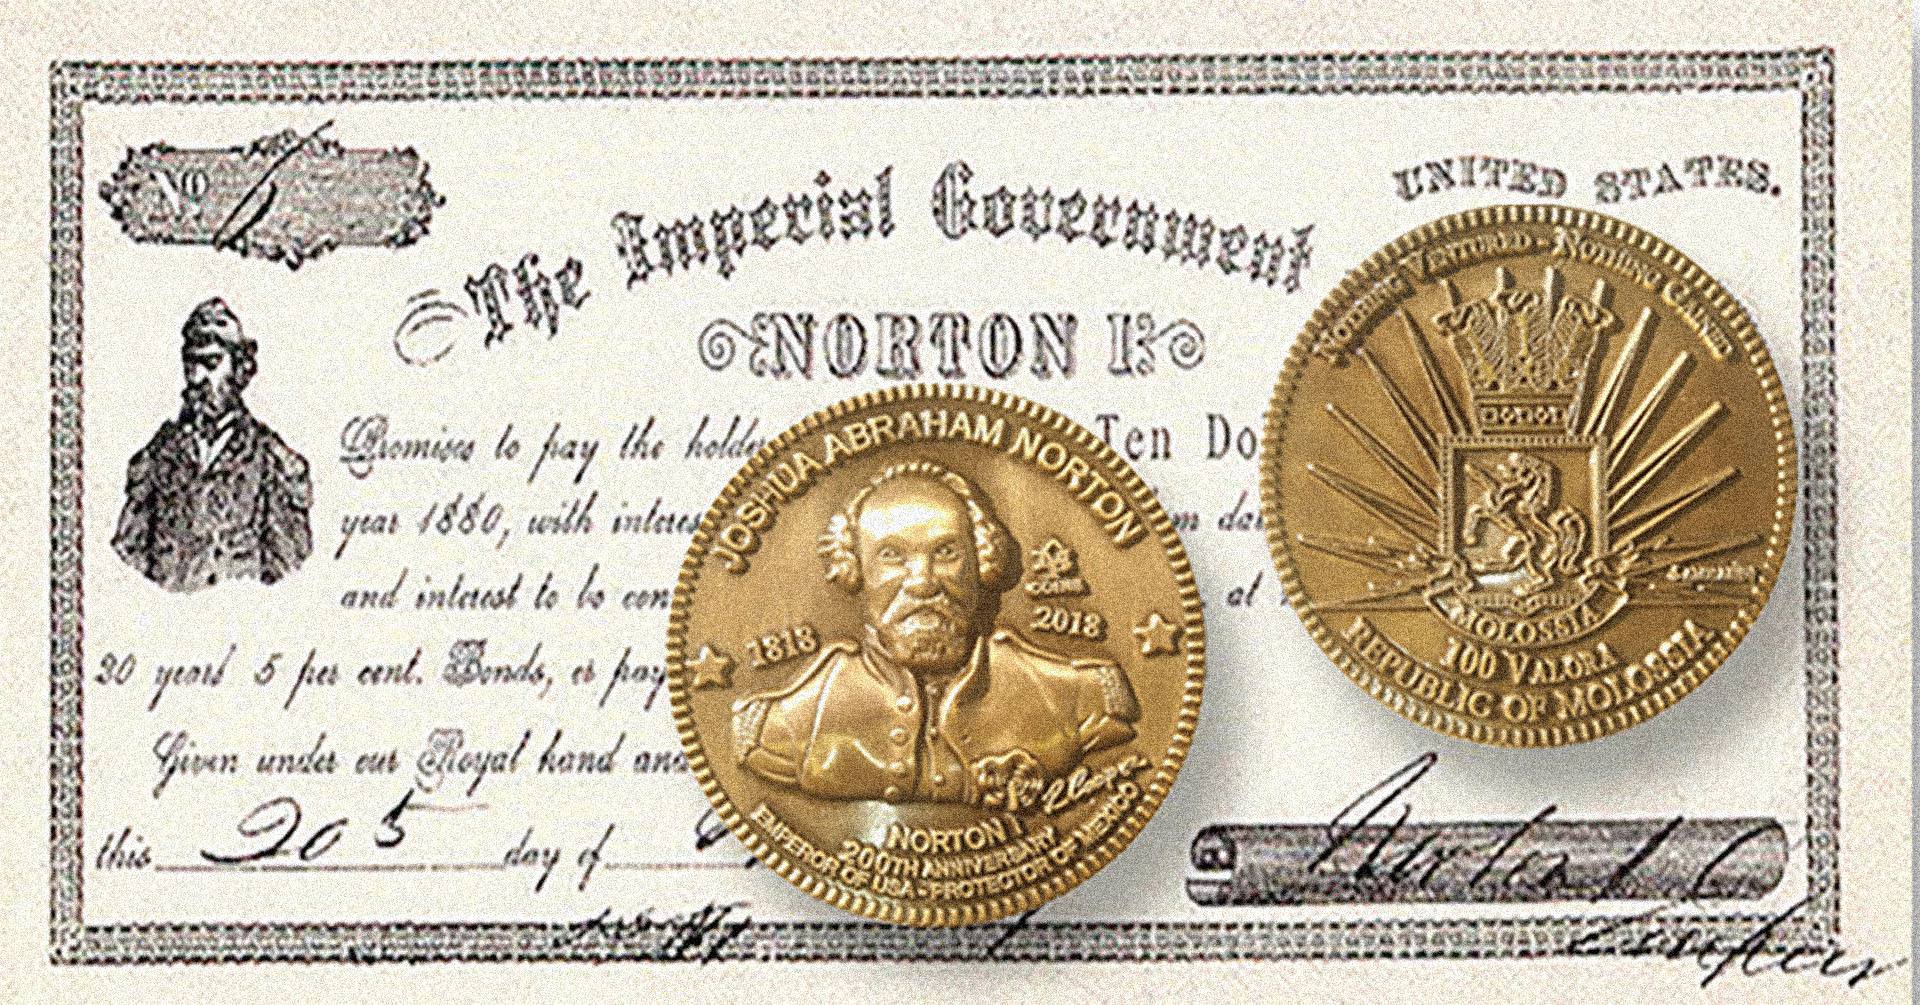 Emperor Norton Dollars